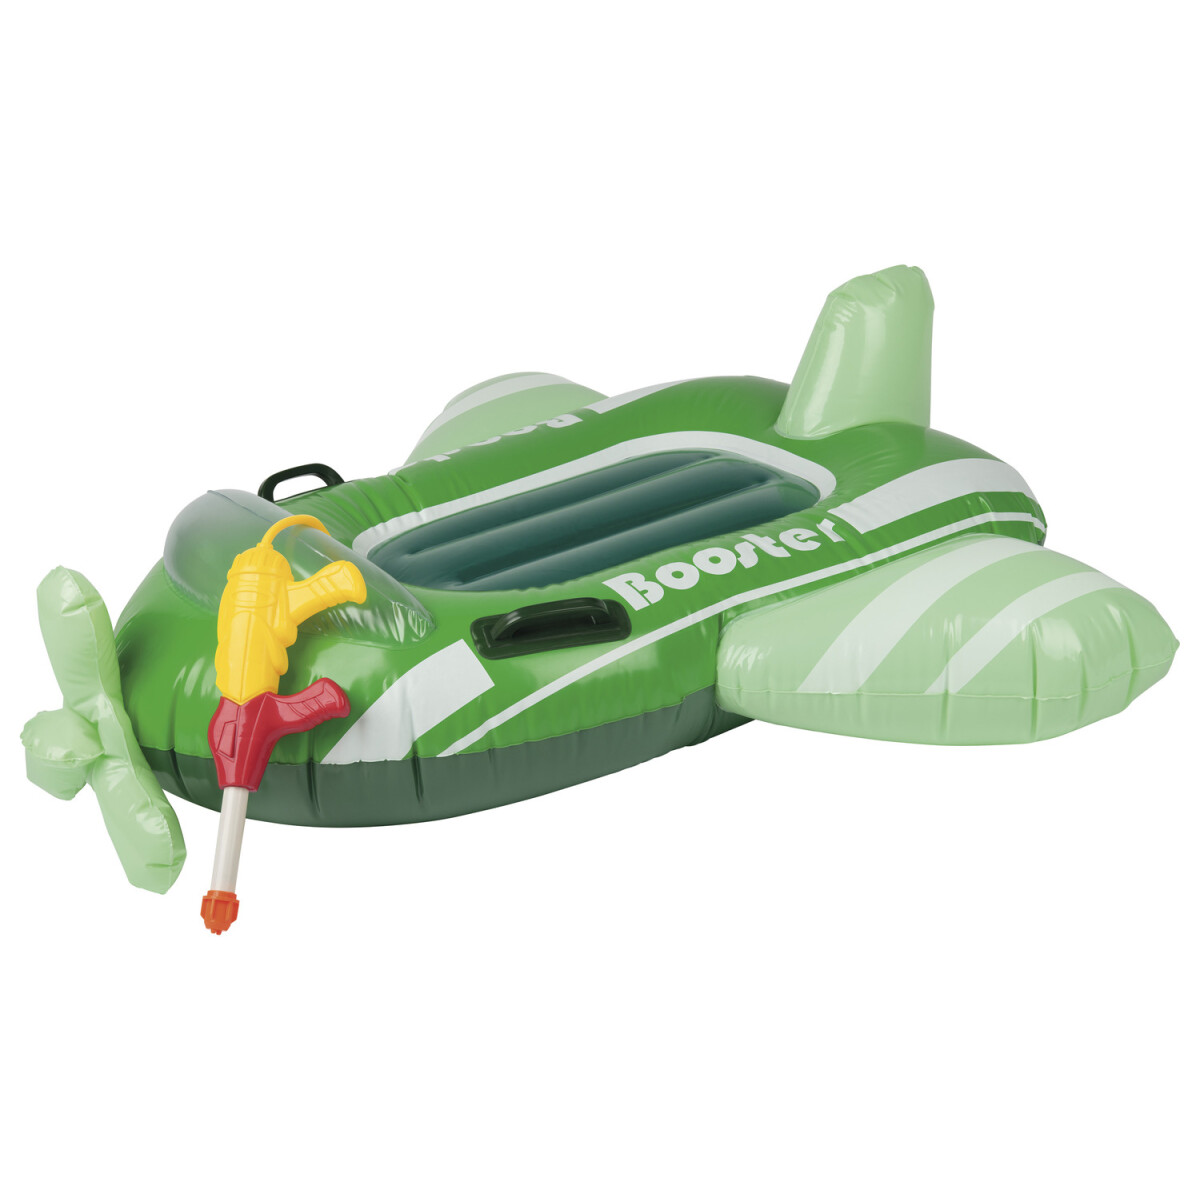 Playtive Kinder Sitzboote, aufblasbar, mit Wasserspritzpistole € (Flugzeug) B-Ware - 12,99 neuwertig